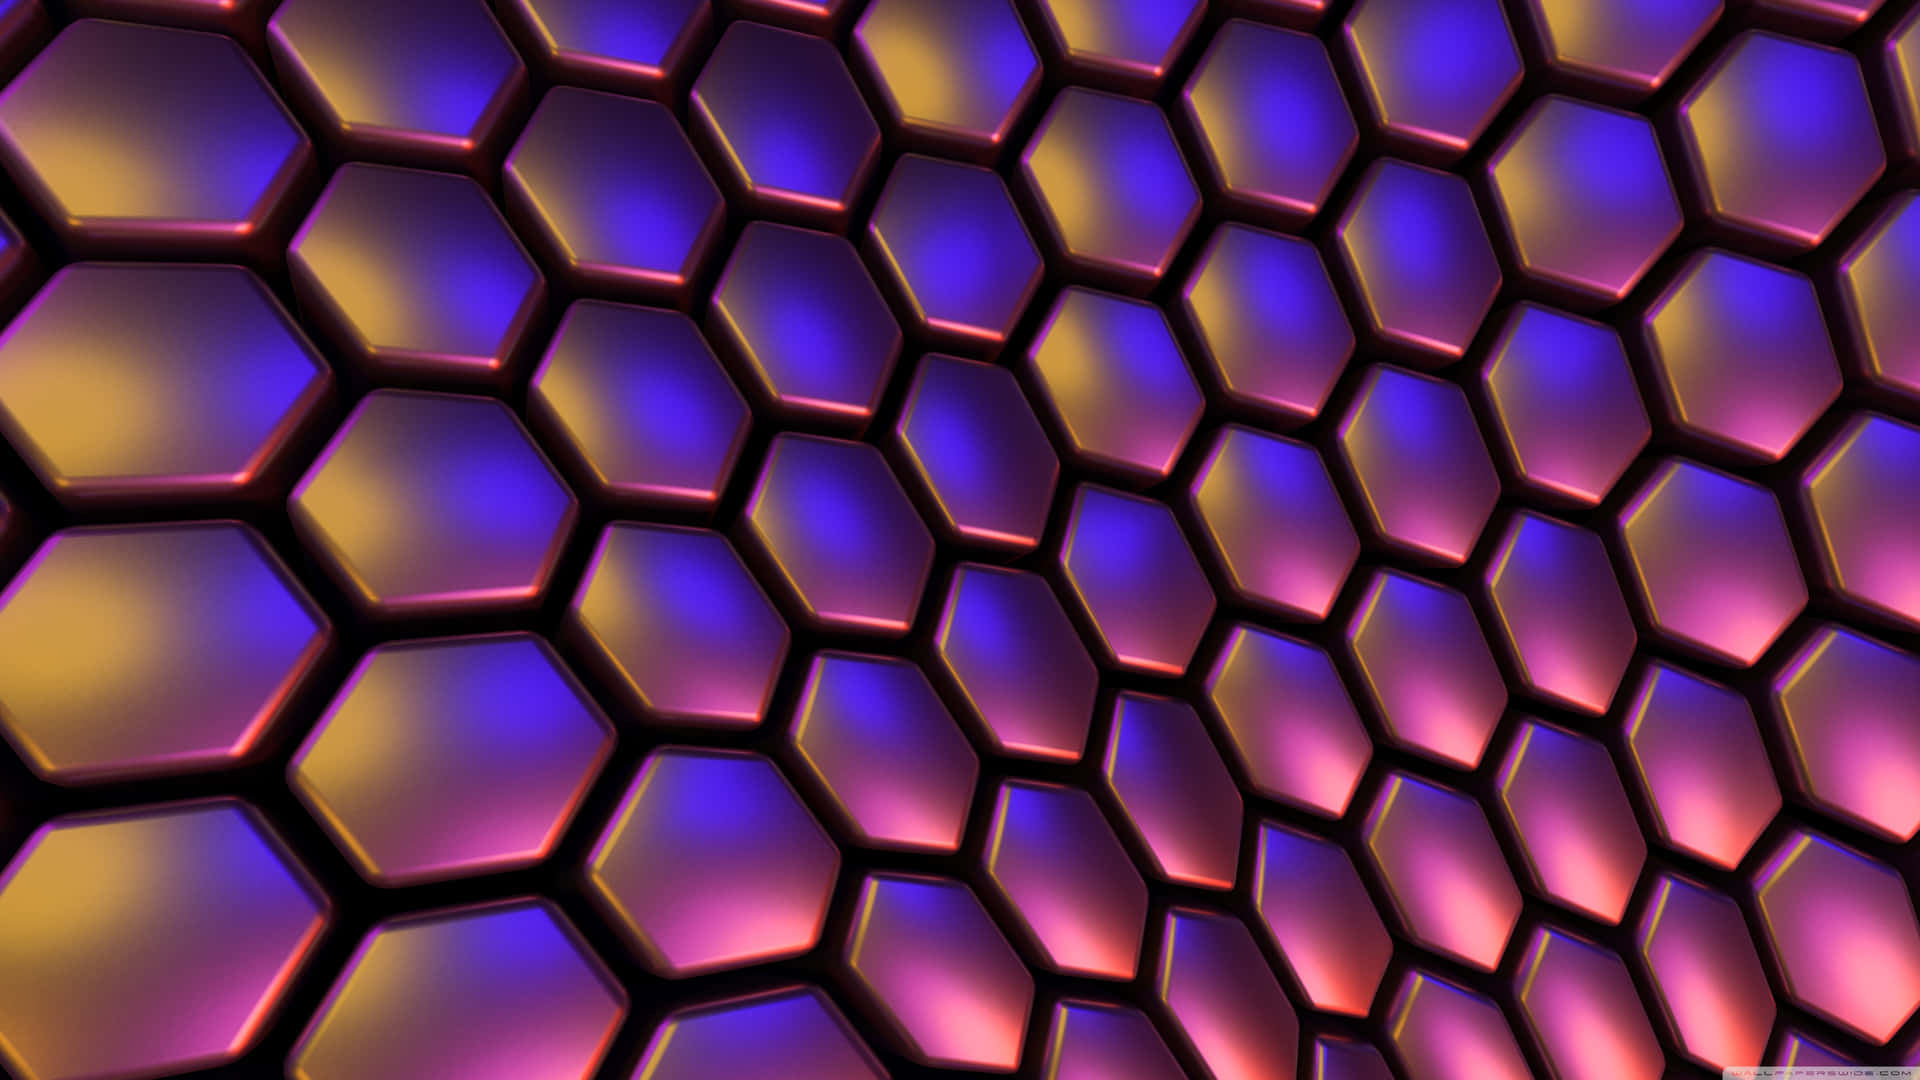 Upptäckde Oändliga Formerna Och Färgerna I Denna Fantastiska Hexagon 4k Bakgrundsbild För Dator Eller Mobil. Wallpaper